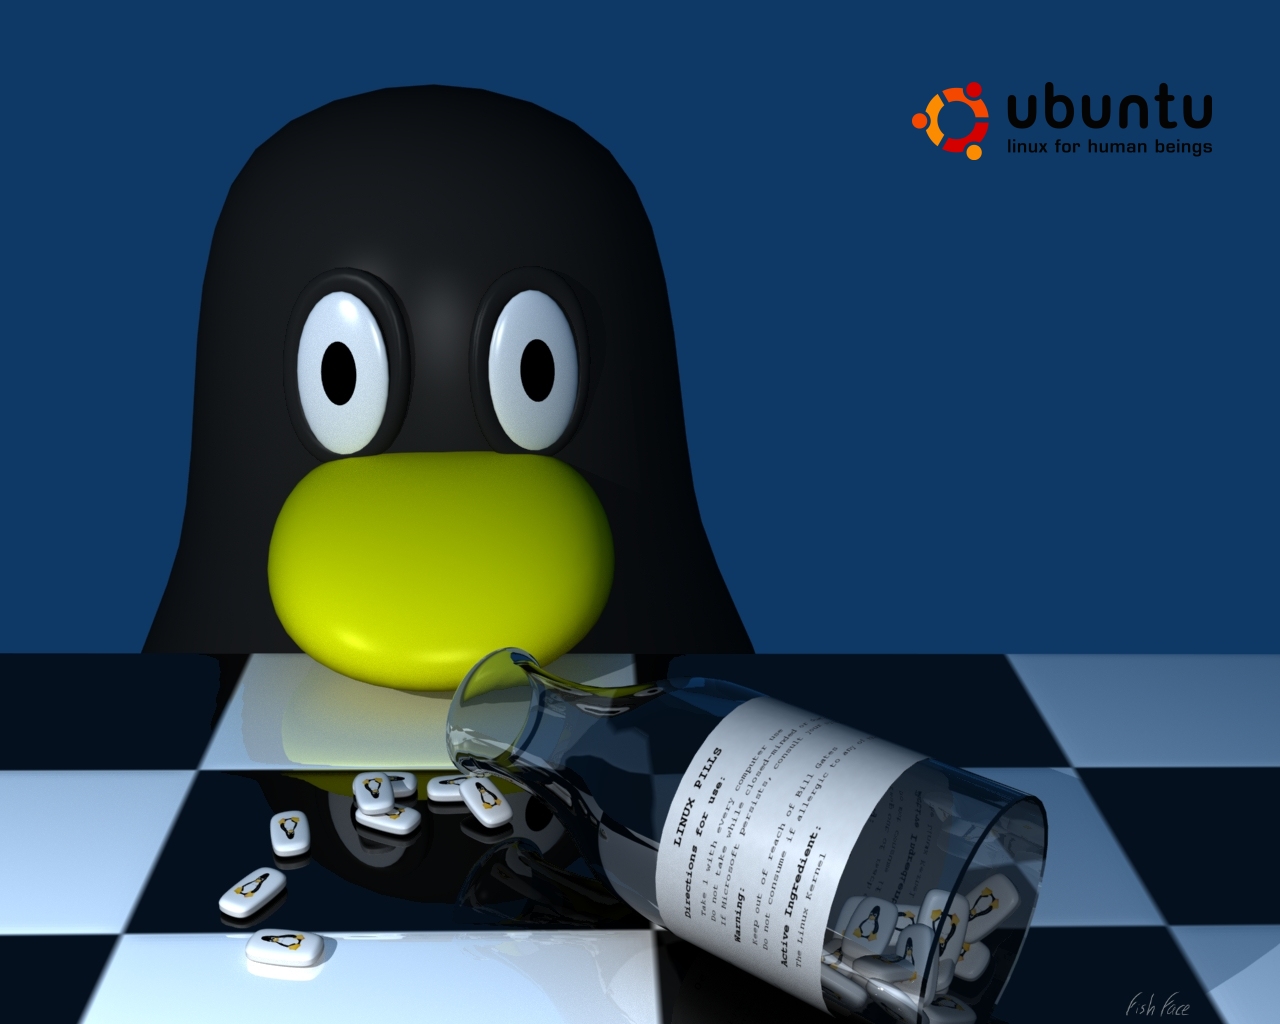 linuxpills_ubuntu.jpg